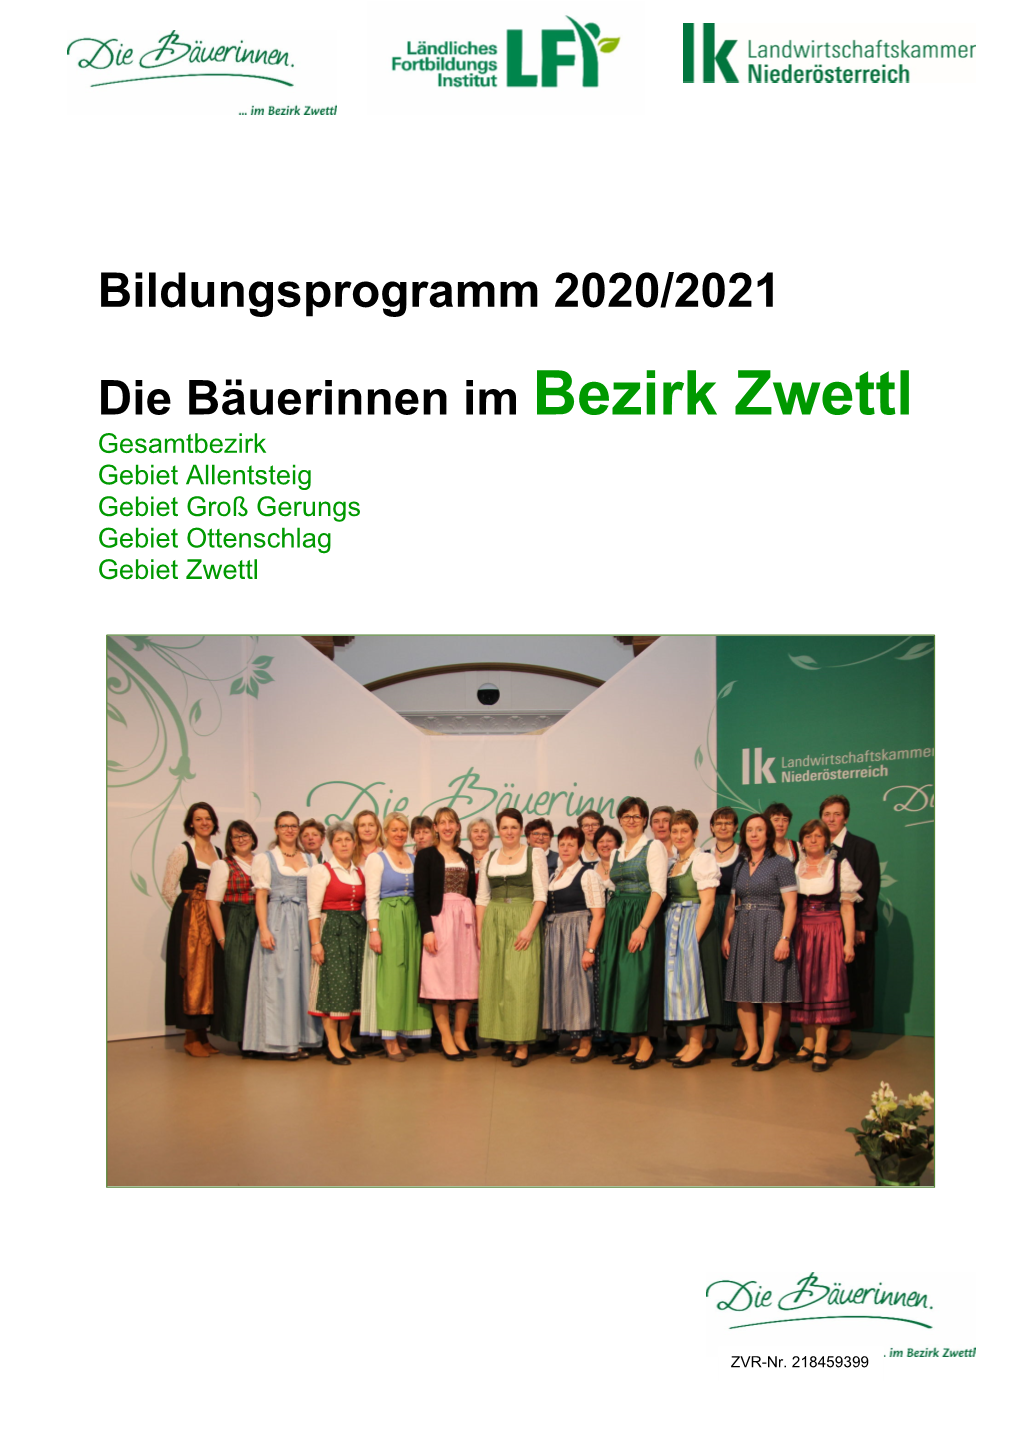 Bildungsprogramm 2020/2021 Die Bäuerinnen Im Bezirk Zwettl